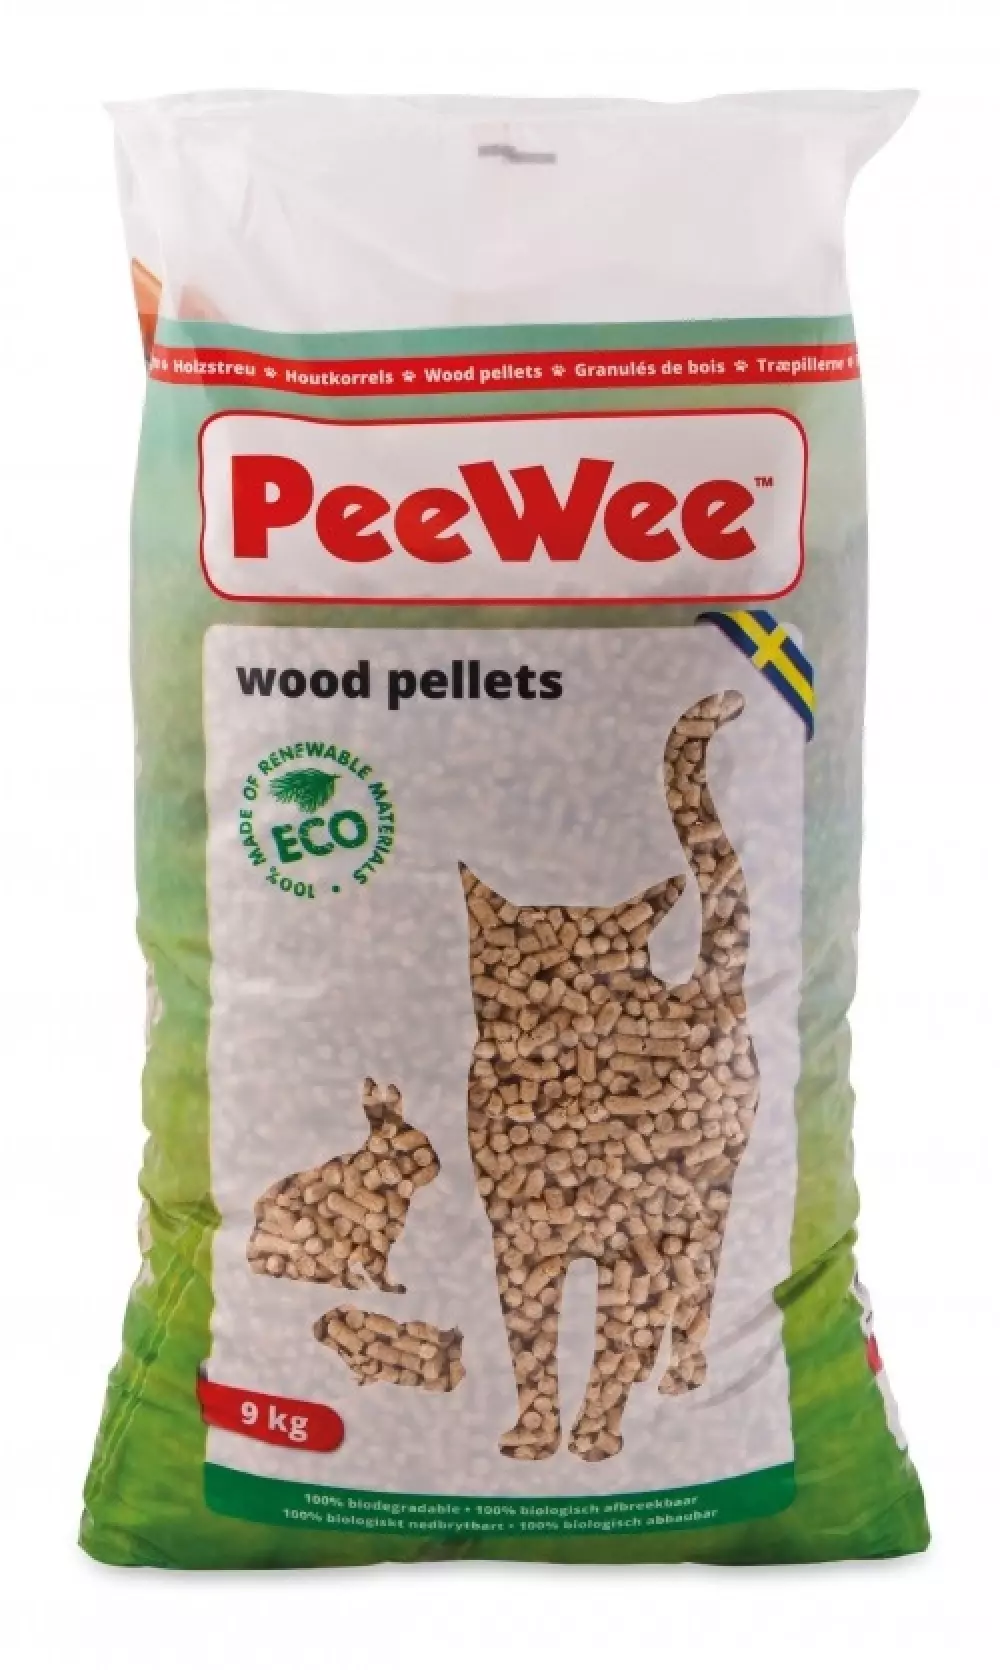 PeeWee pellets, 14liter/9kg, 8718885080285, Katteutstyr, Kattesand og Pellets, Pee Wee, Imazo AB, 'PEEWEE ECO TRÄSTRÖ 9KG 90 ST/PALL